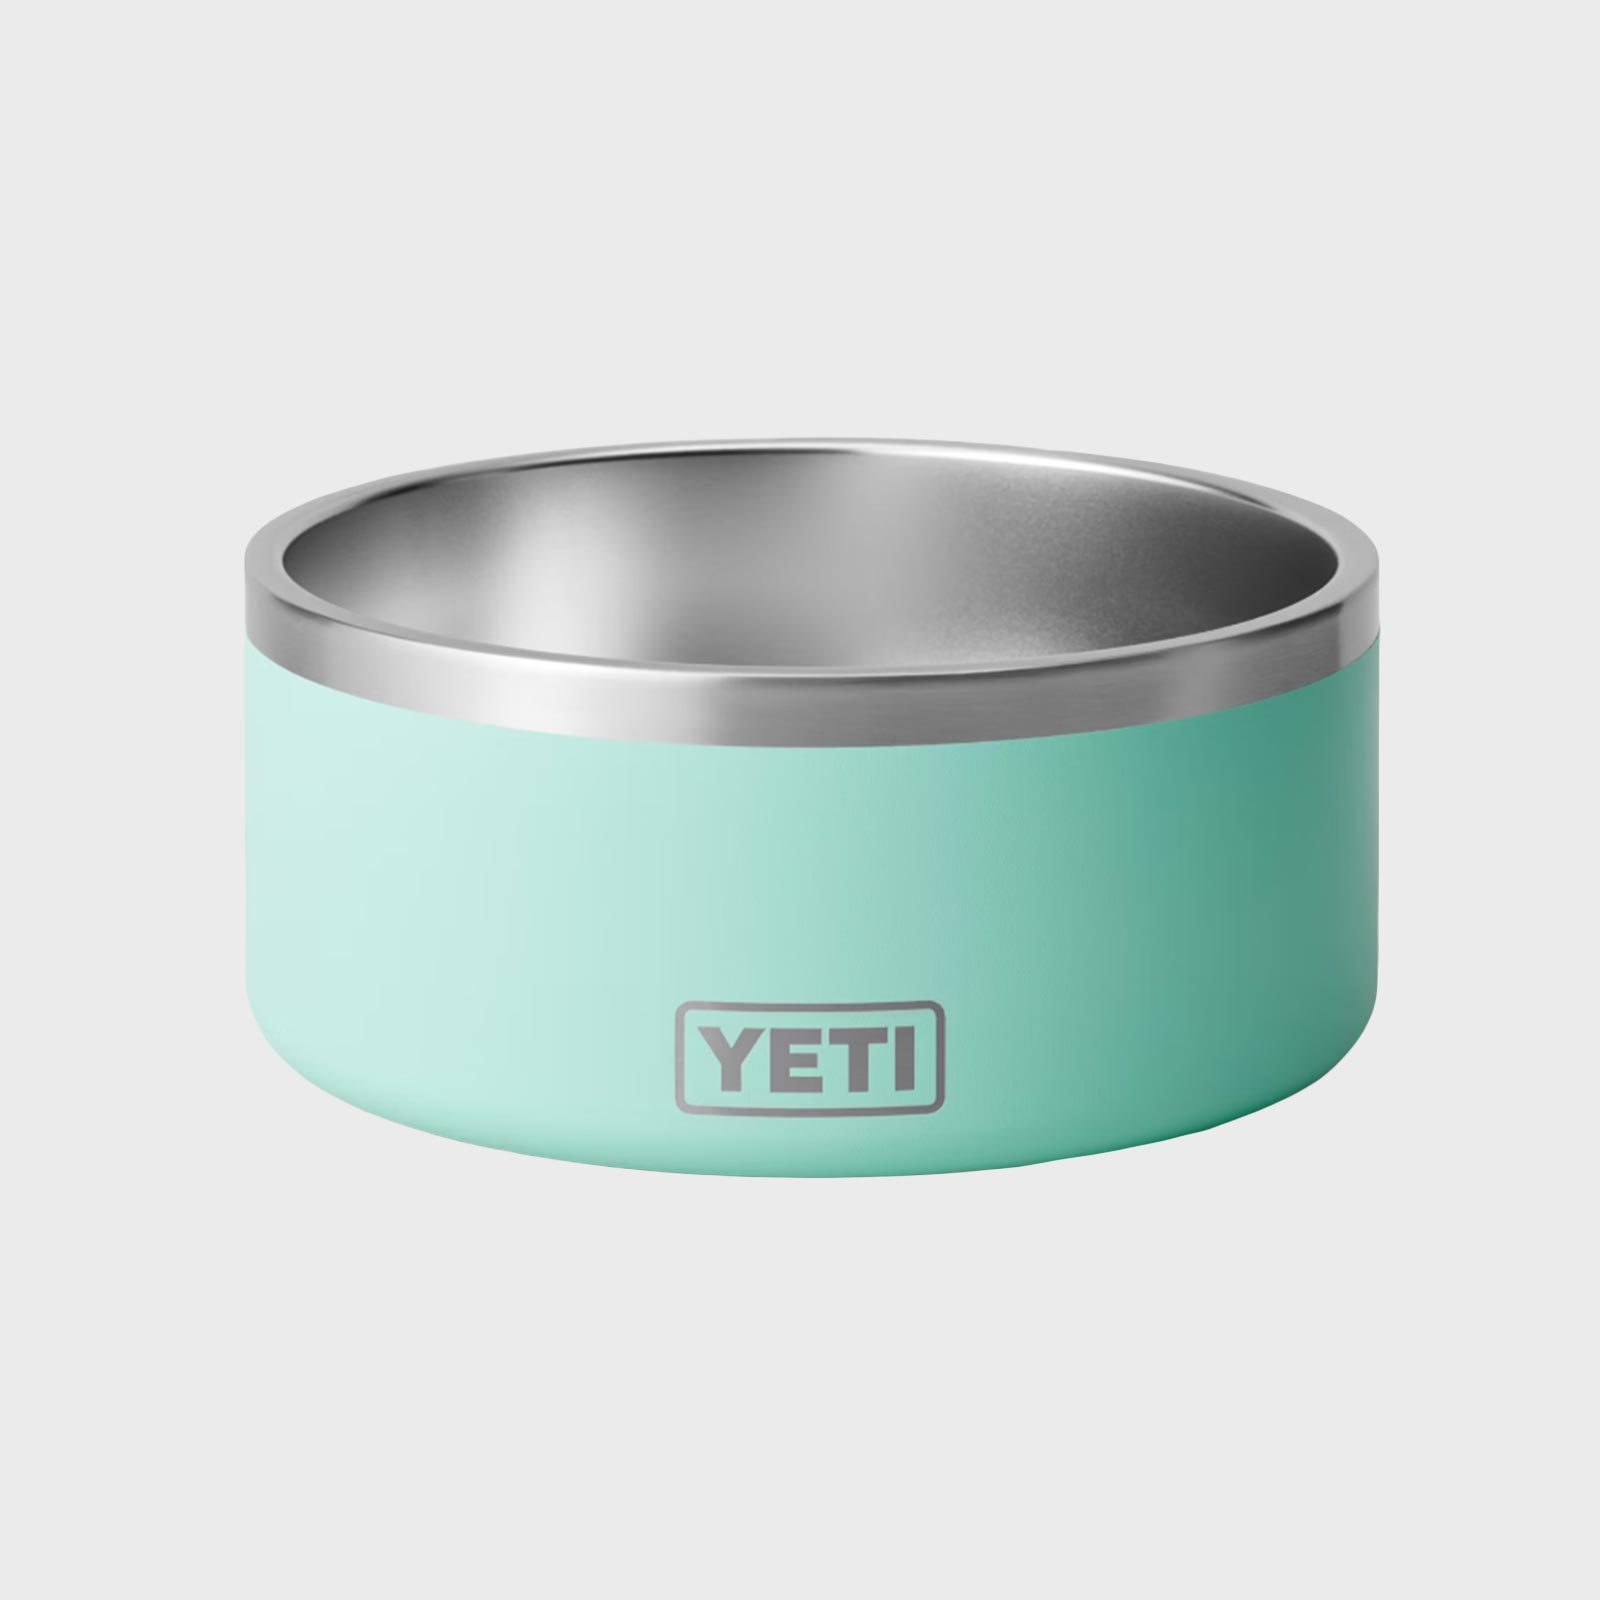 YETI Dog Bowl Stand & Personalized YETI Boomer Dog Bowl (Optional)